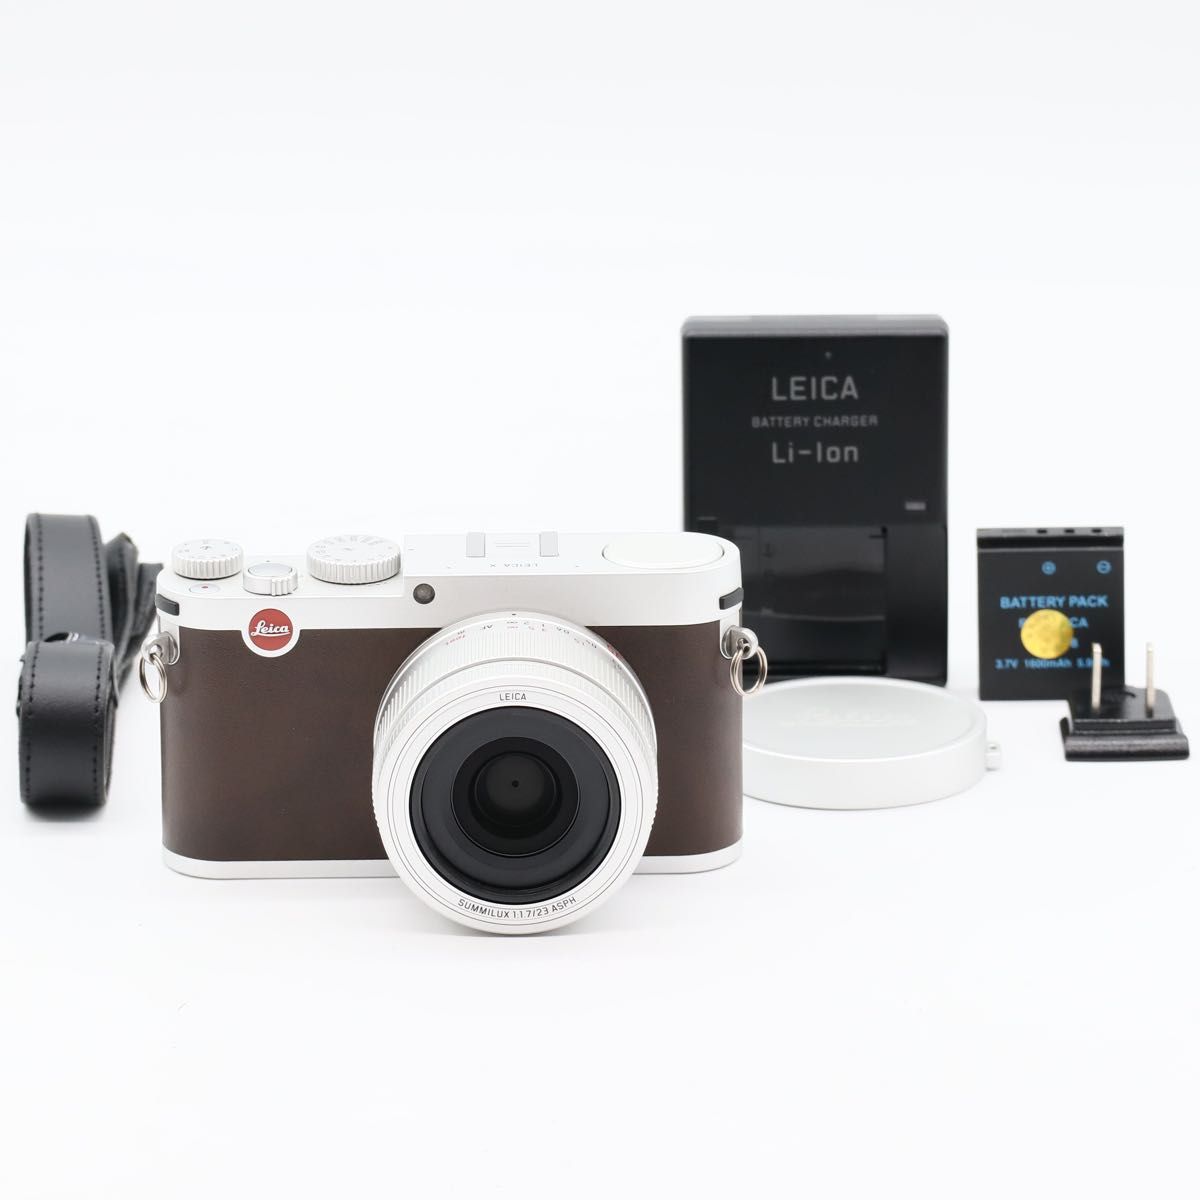 Leica X (typ 113) 16.5MP デジタルカメラ 3インチTFT液晶 (シルバー)